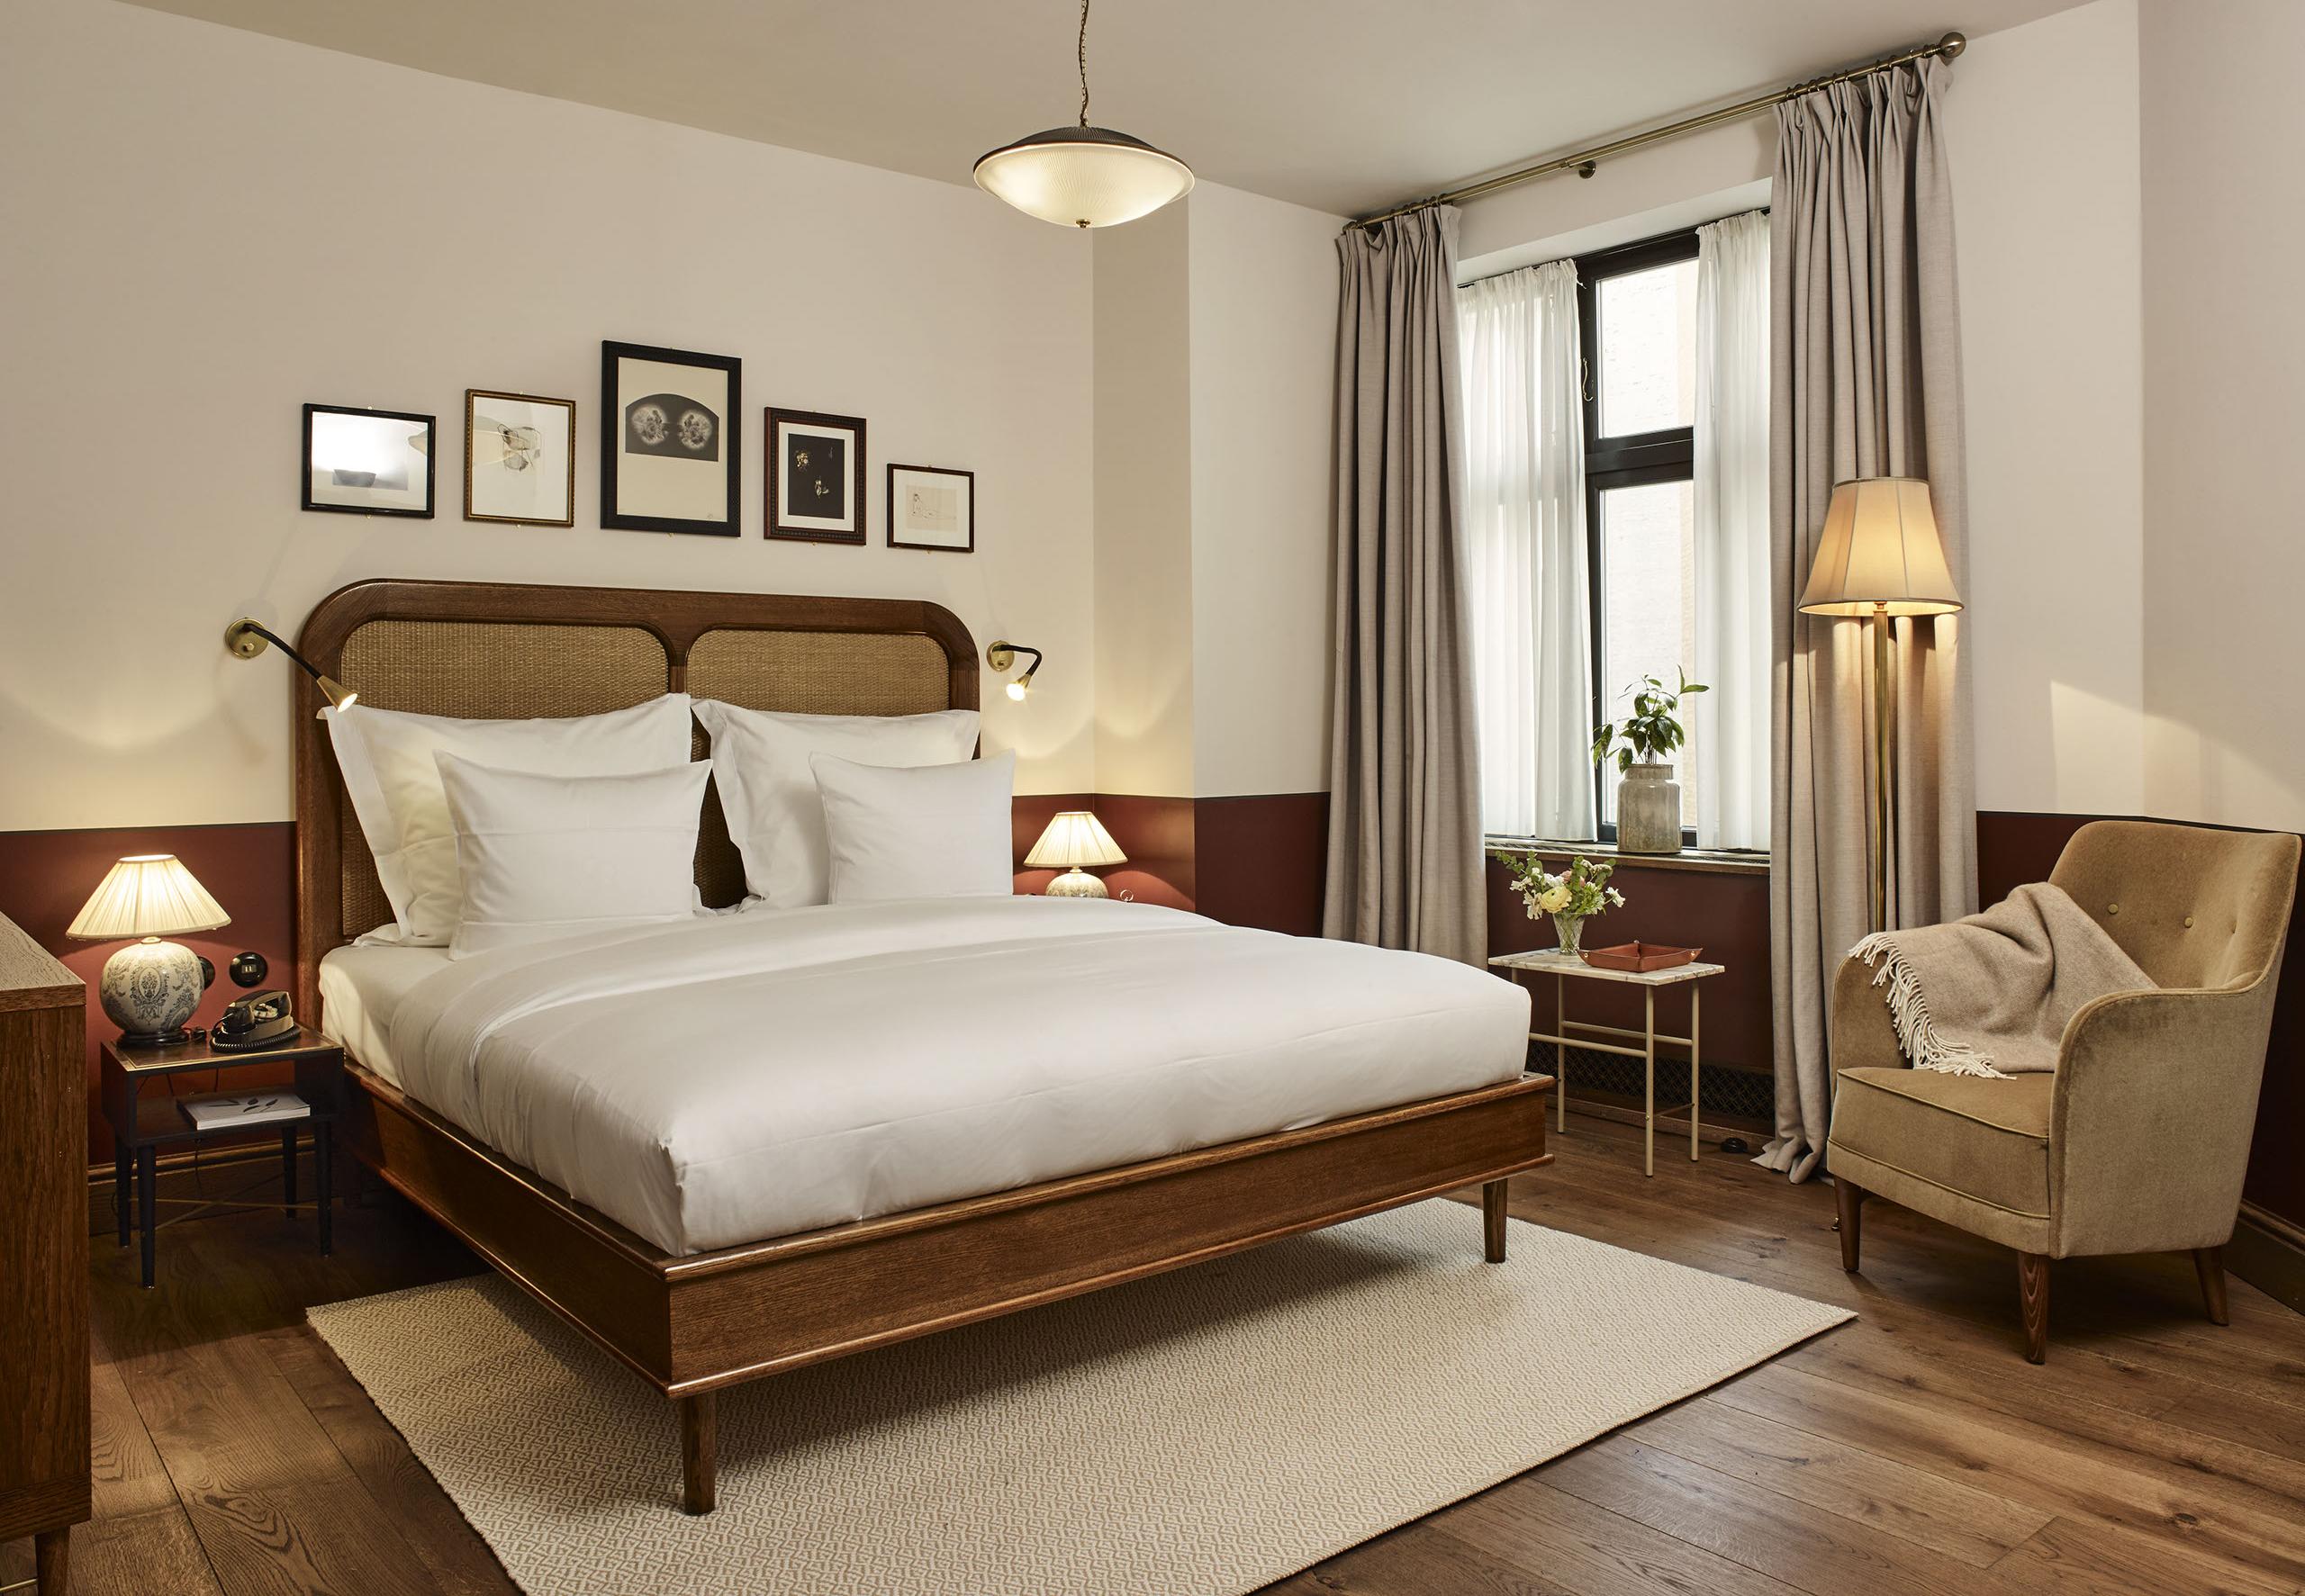 Ein Bett aus europäischer Eiche und Rattan, das speziell für Sanders, Kopenhagens führendes Luxus-Boutique-Hotel, entwickelt wurde.

Erhältlich in sieben Größen und zwei Holztönen. Auf Bestellung in Europa handgefertigt.


---


Euro-Doppel
Kopfteil